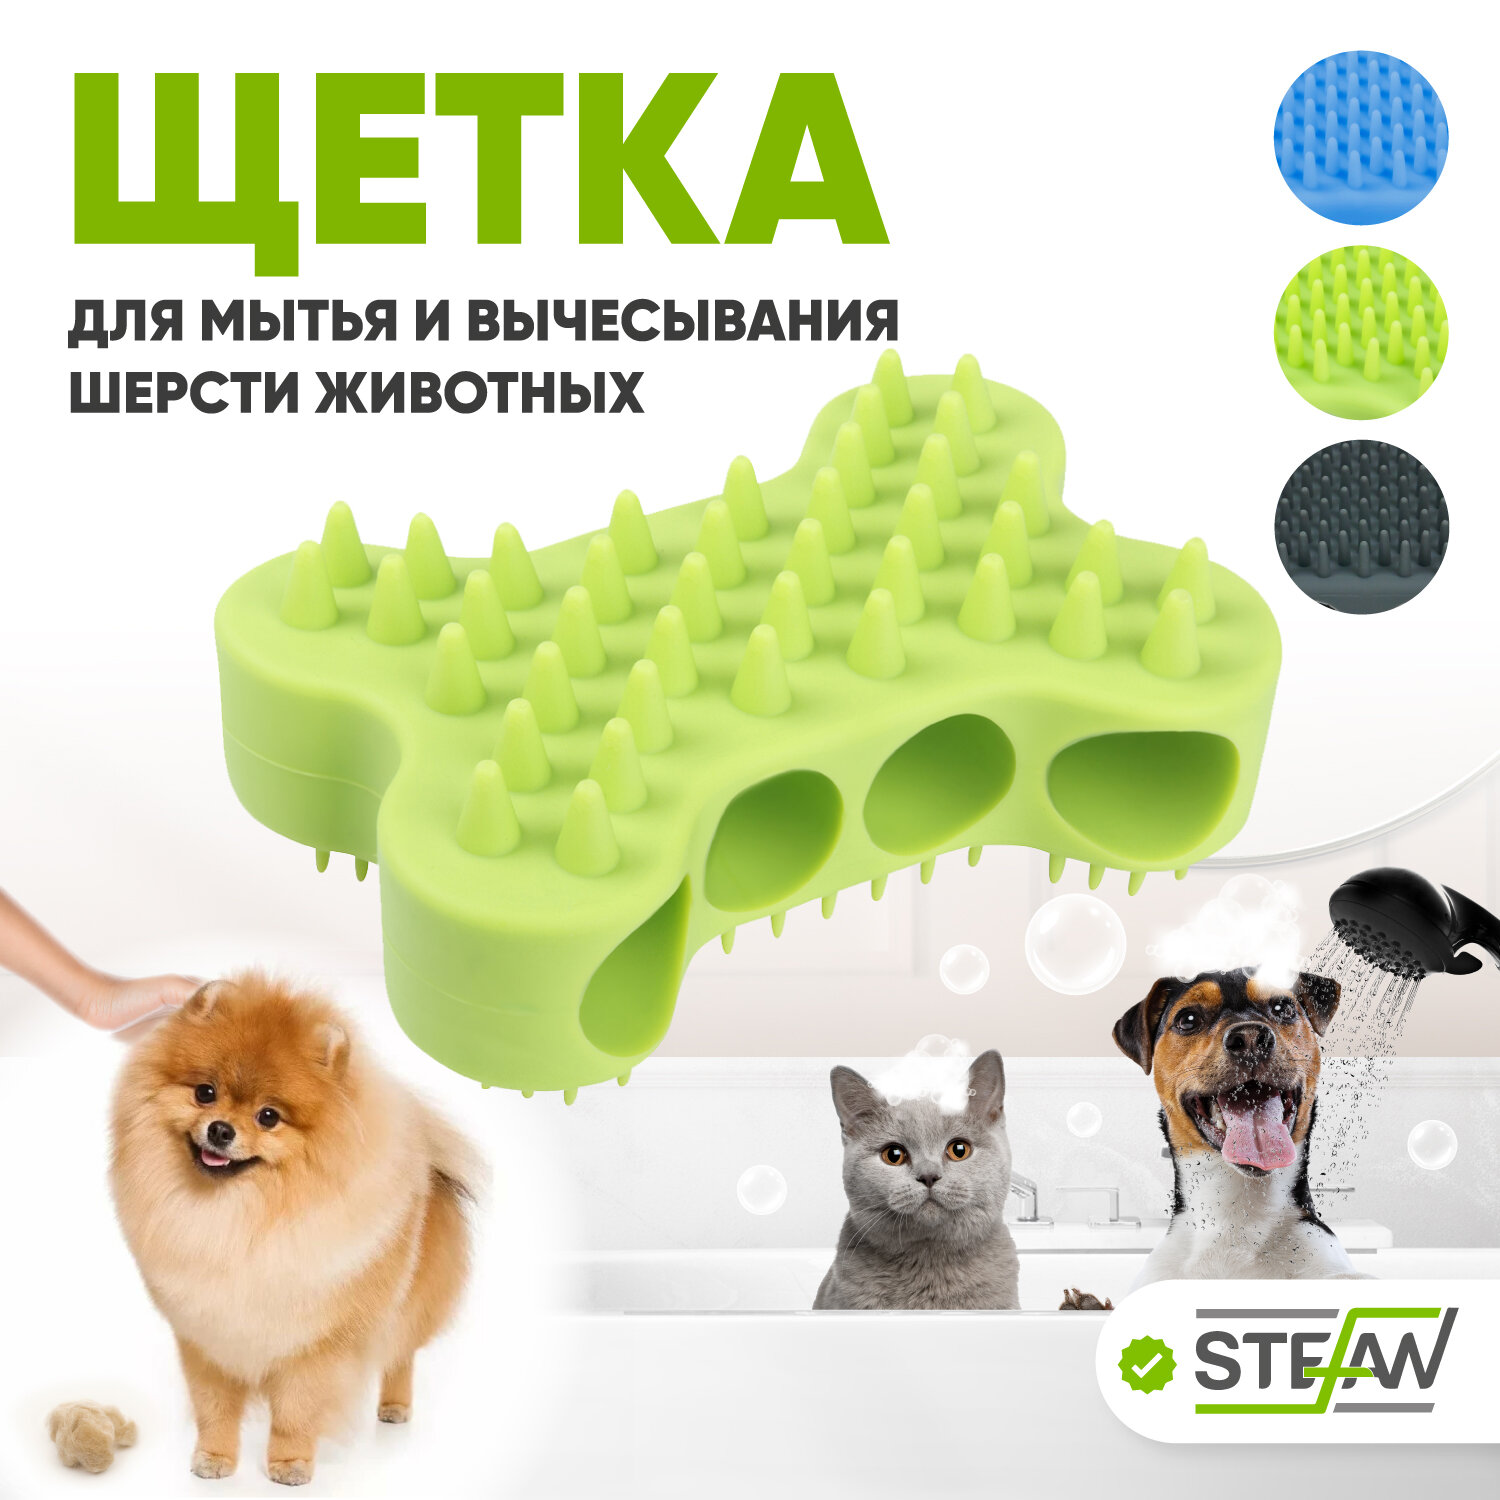 Массажная щетка для мытья животных STEFAN (Штефан) силиконовая салатовая, WF03706